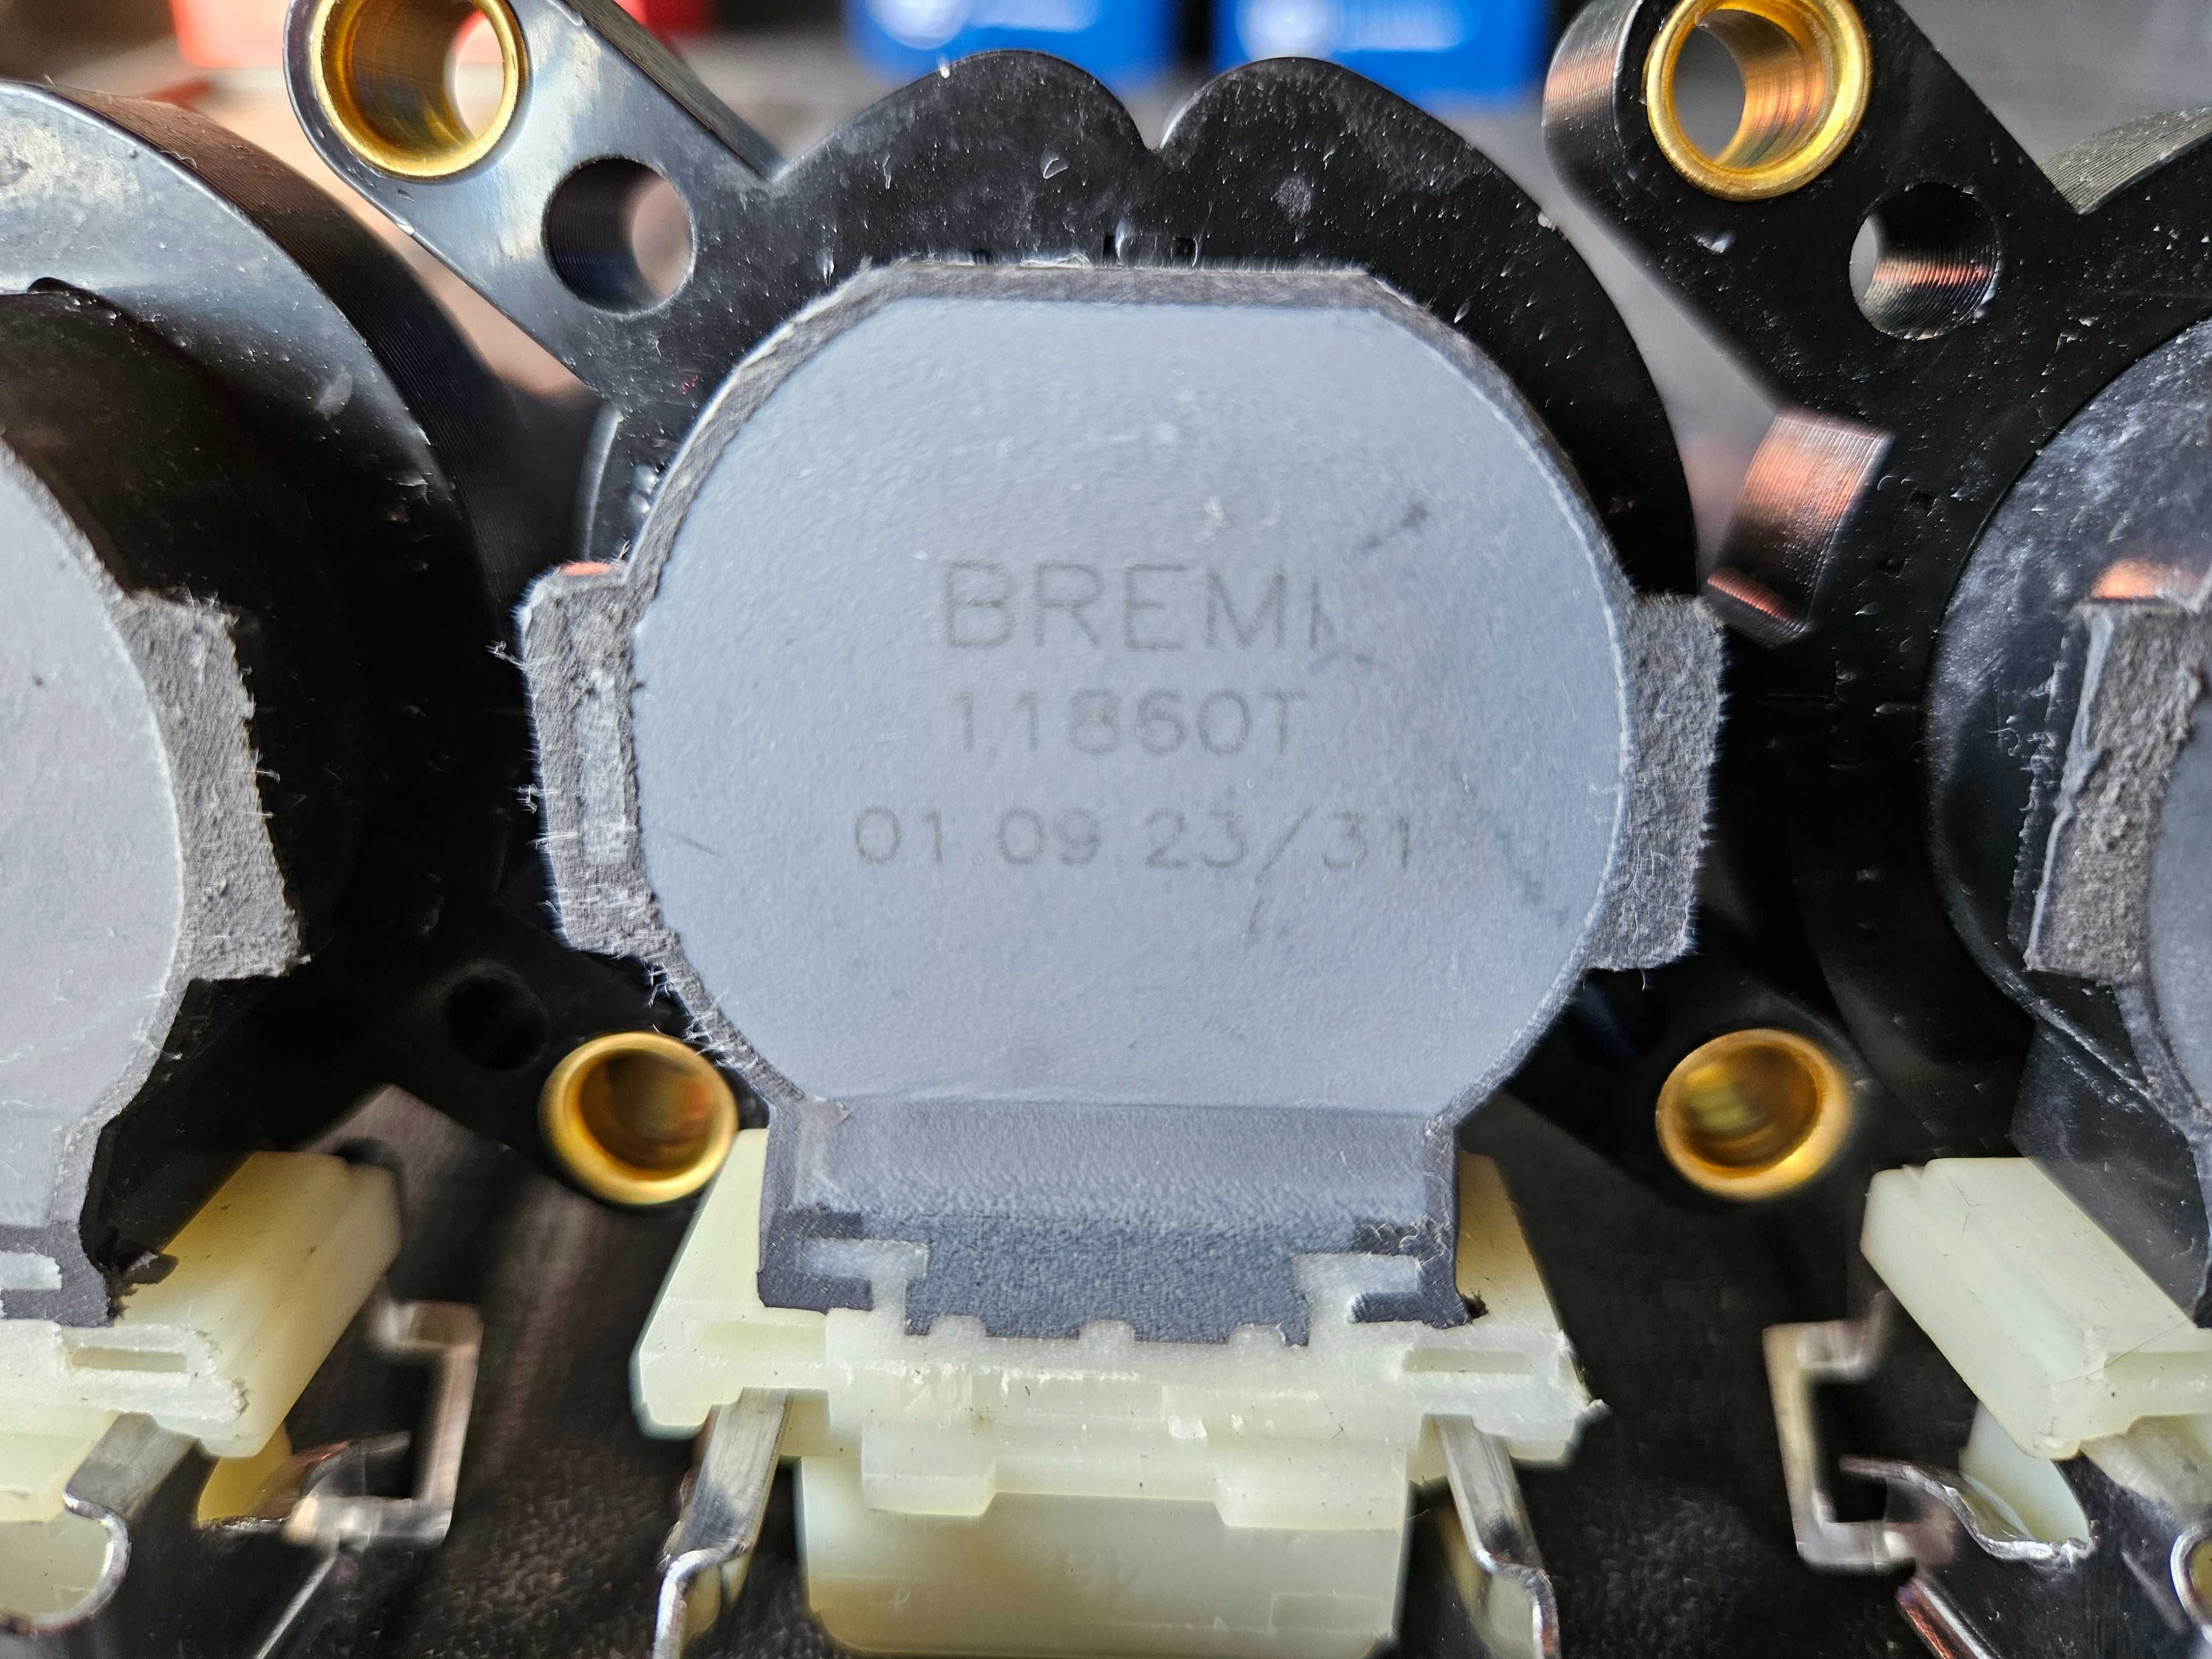 Nowa Cewka zapłonowa BREMI 11860T BMW e39